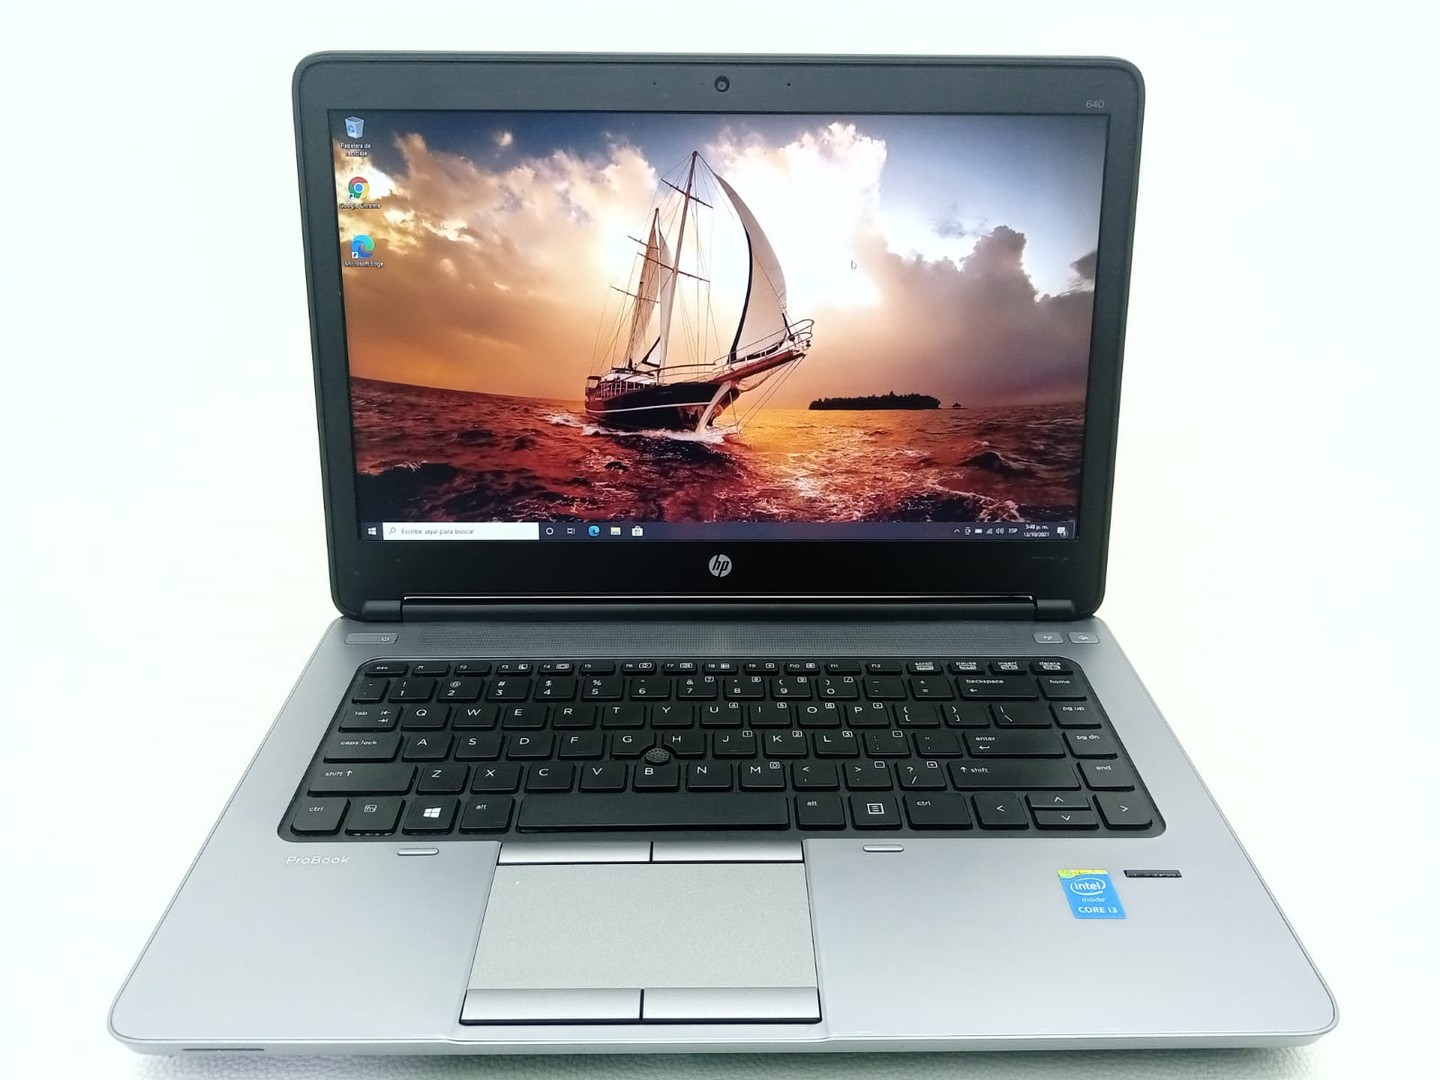 computadoras y laptops - Laptop HP ProBook 640 G1 Core i3 128GB SSD 4GB RAM (Incluye Mouse y Mochila)